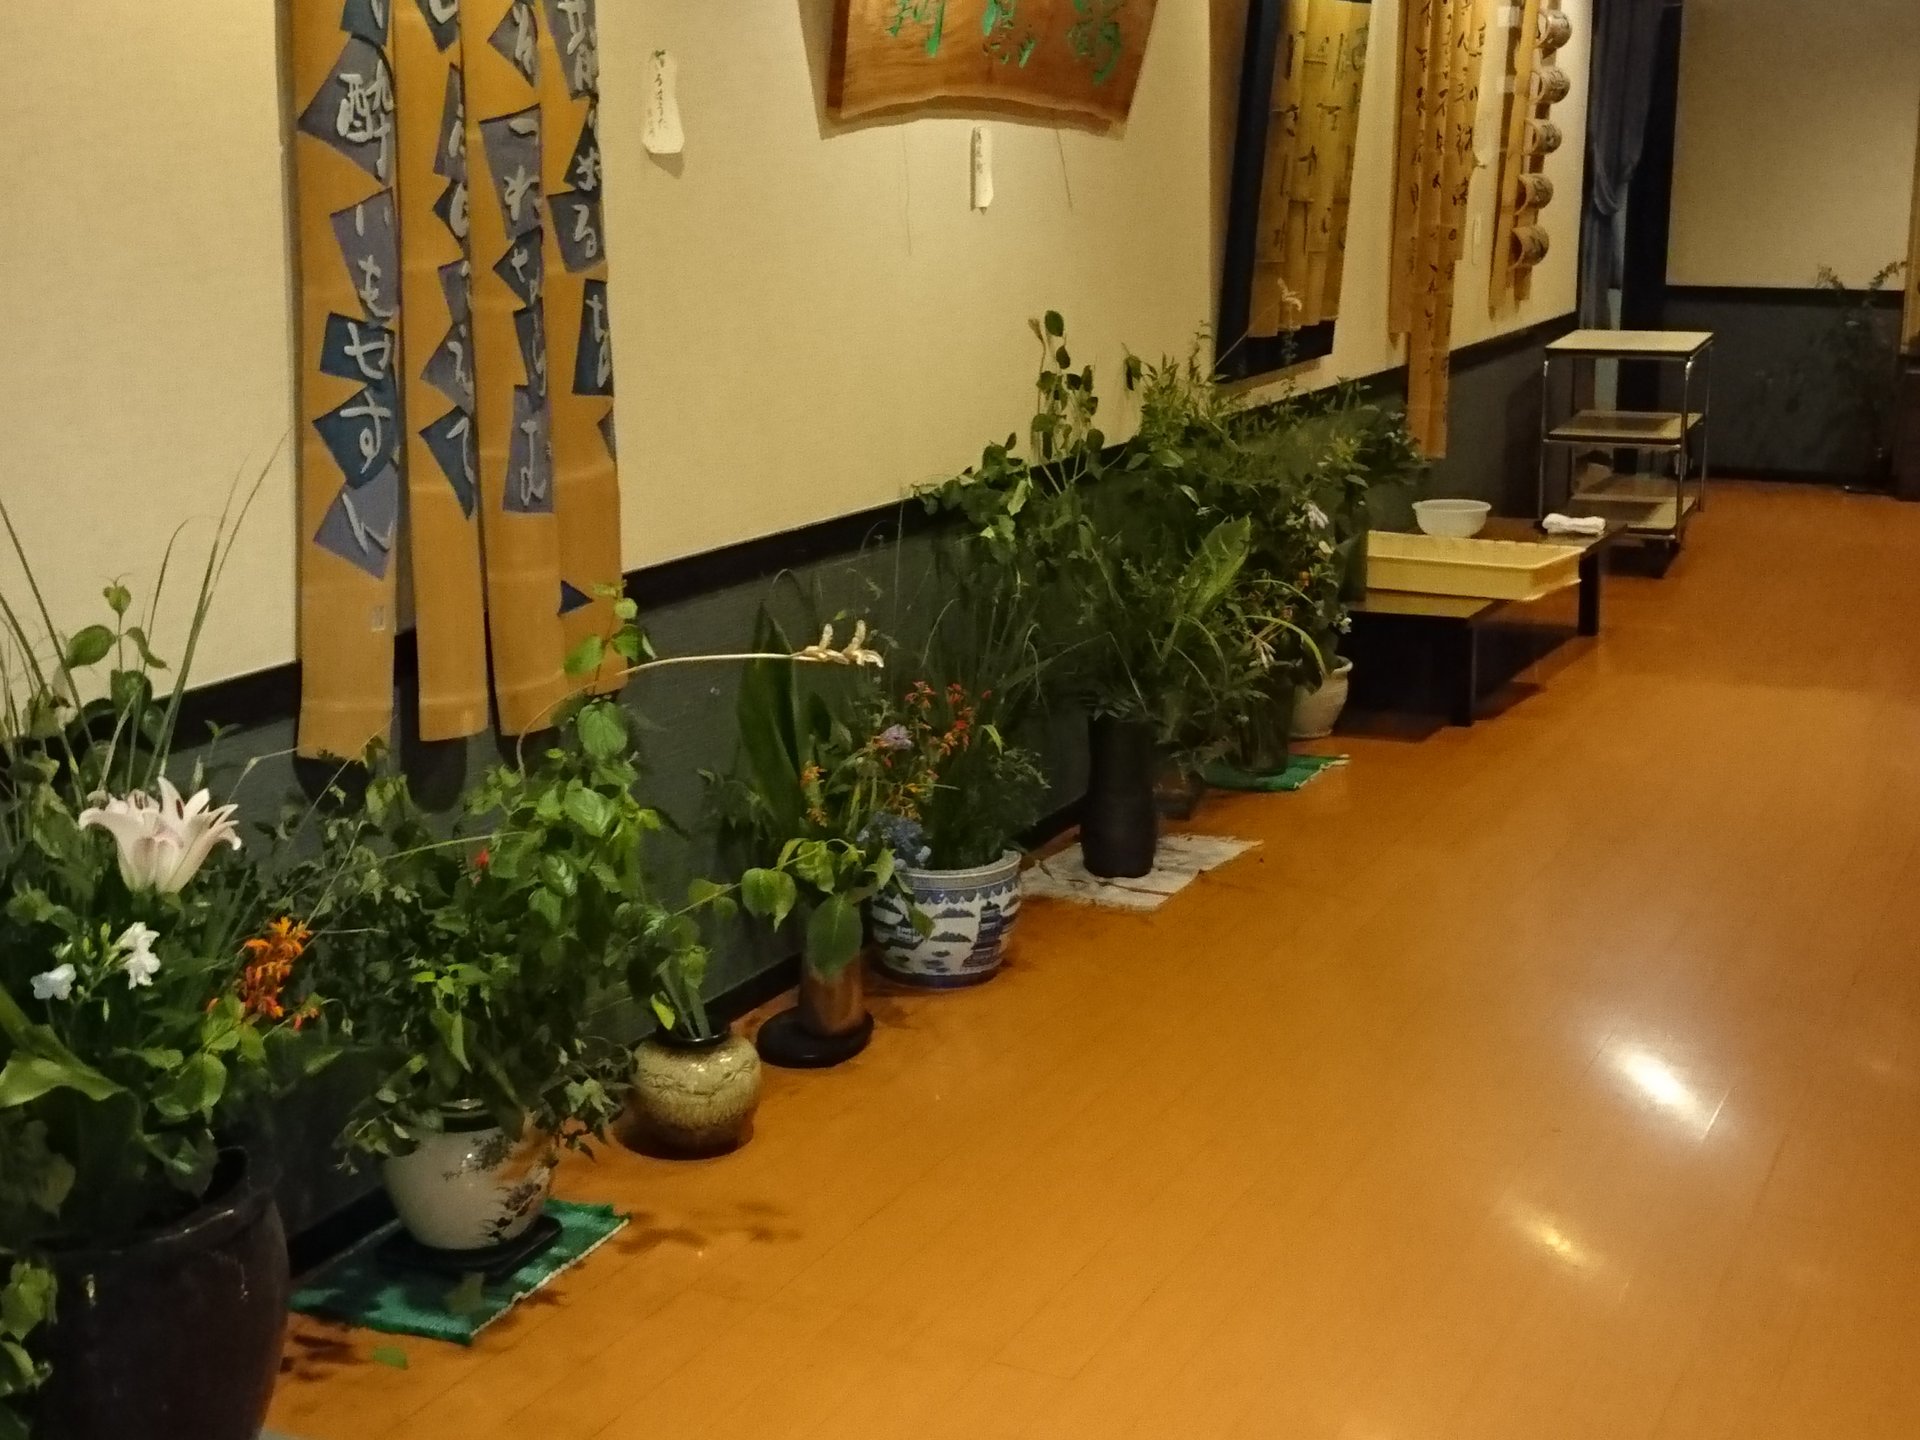 【埼玉県深谷】七夕祭りの日に江戸時代の旅籠から続く伝統旅館に泊まってみました。